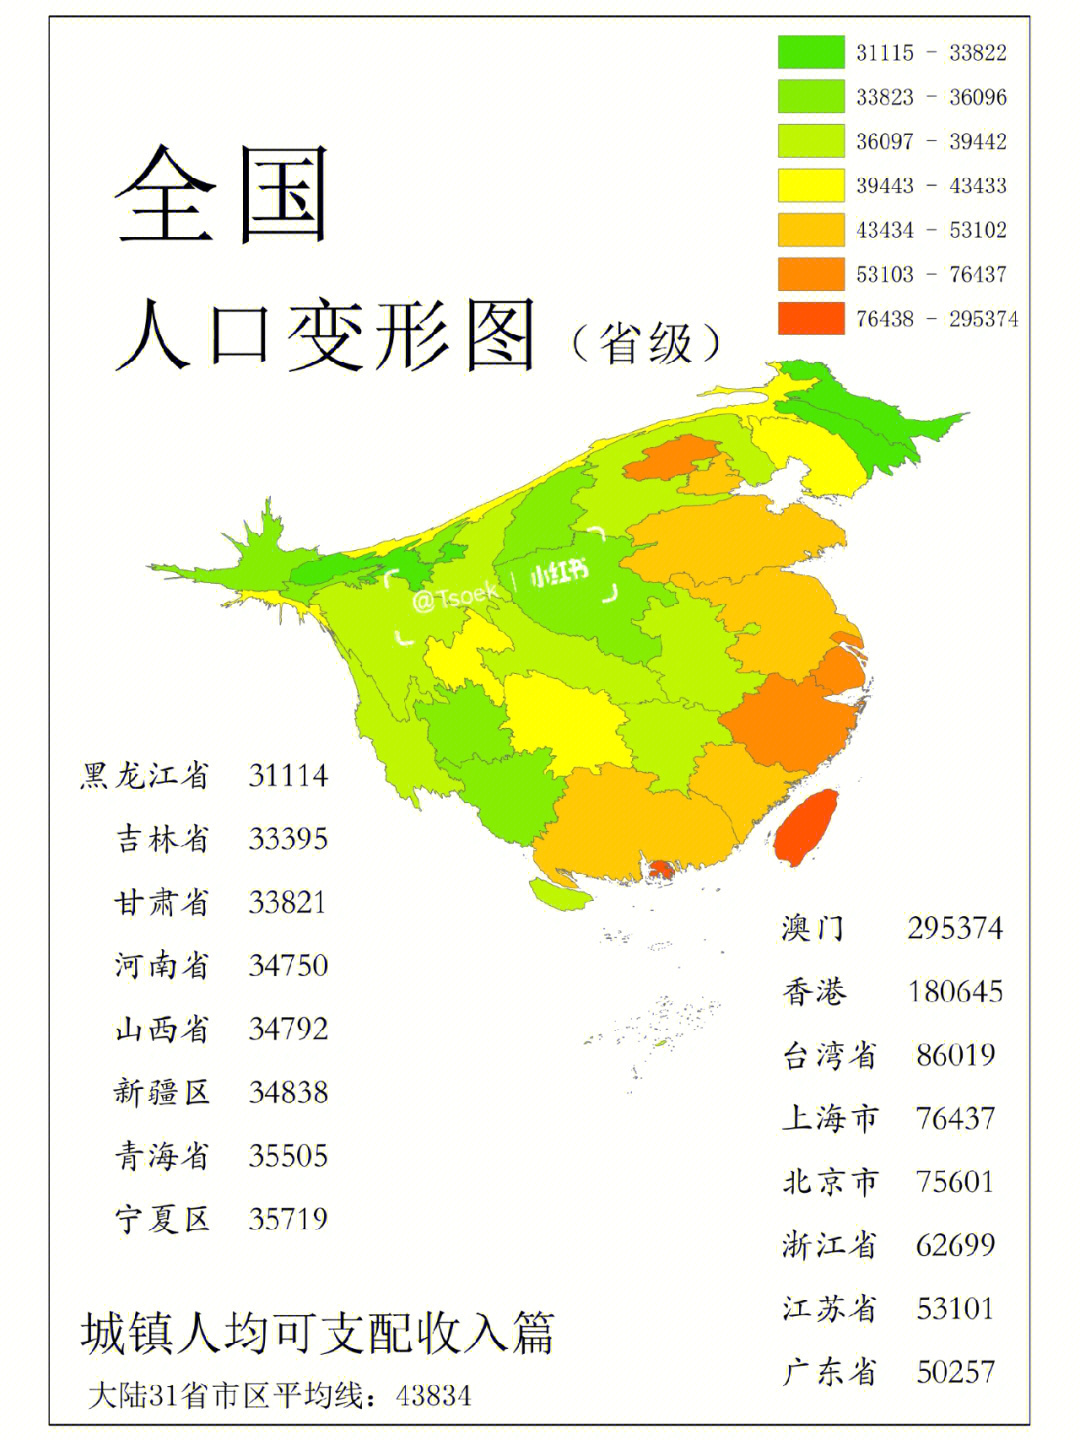 中国人口增长率 地图图片